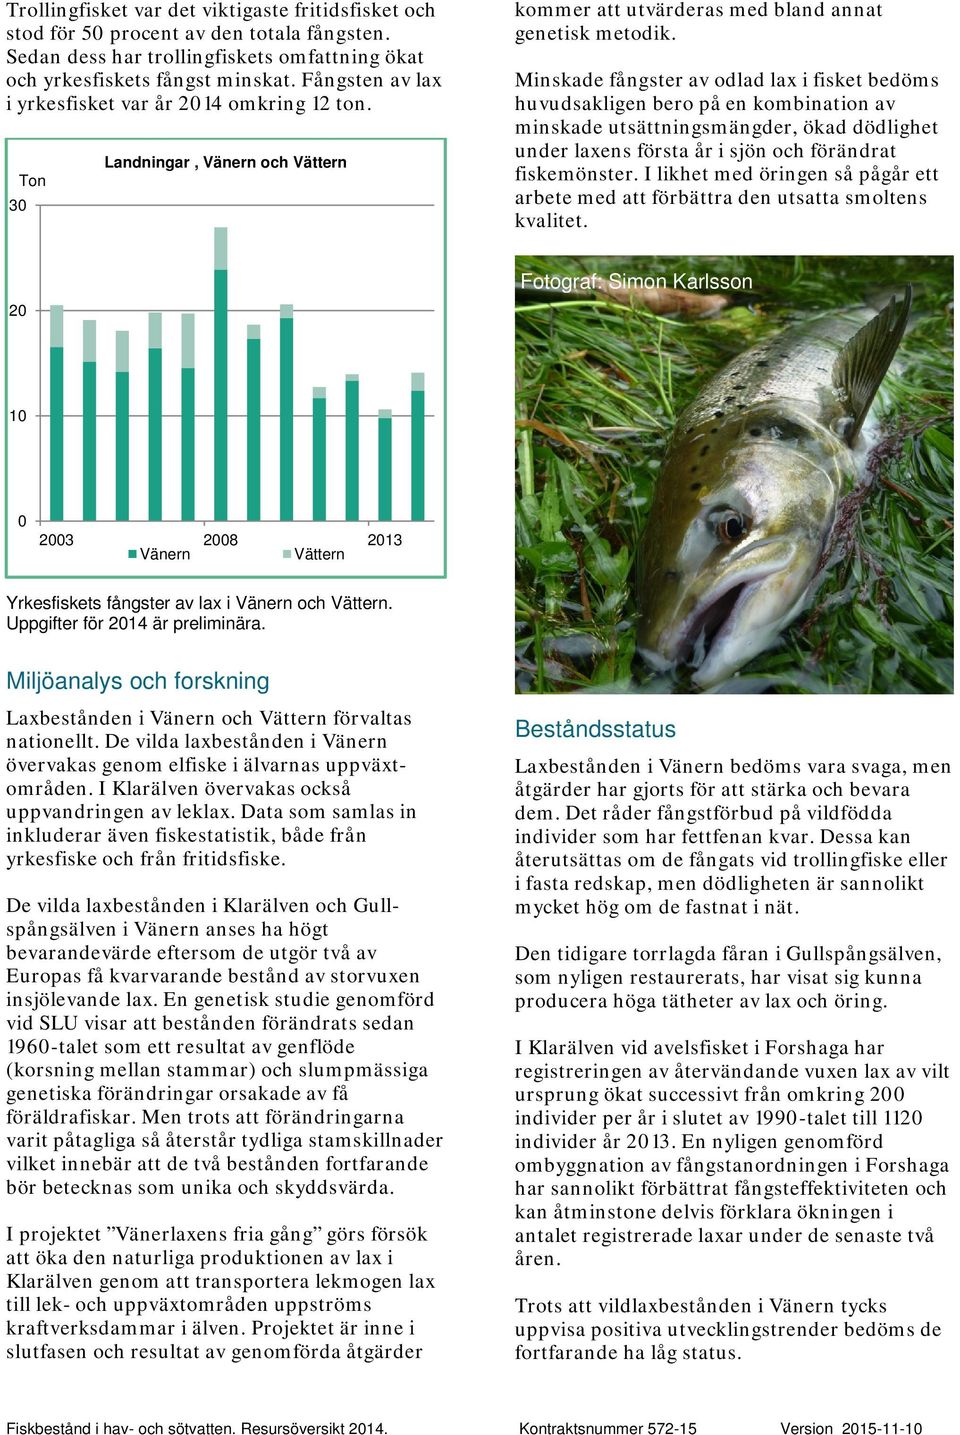 Minskade fångster av odlad lax i fisket bedöms huvudsakligen bero på en kombination av minskade utsättningsmängder, ökad dödlighet under laxens första år i sjön och förändrat fiskemönster.